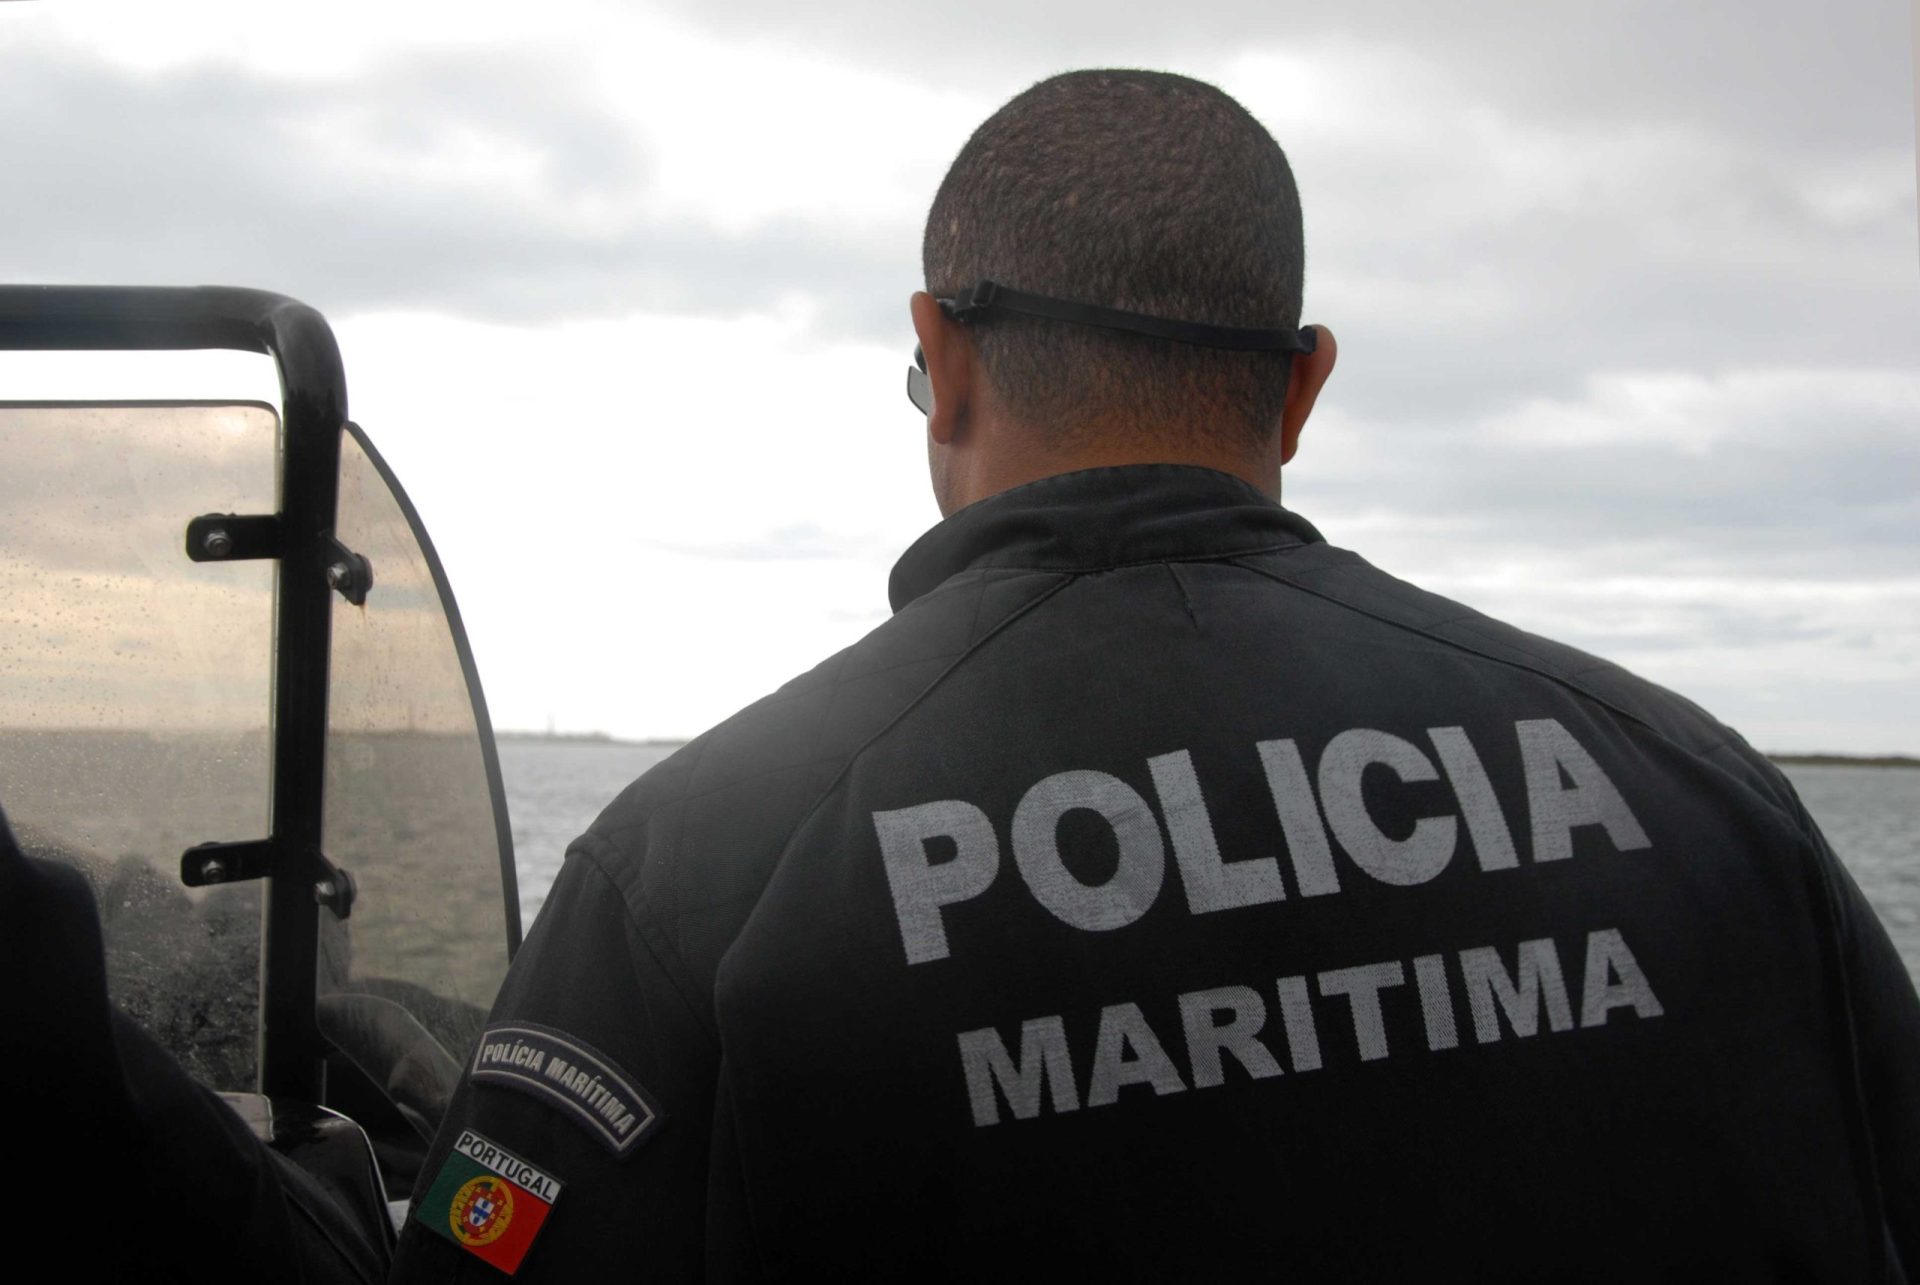 27 refugiados auxiliados pela Polícia Marítima na Grécia